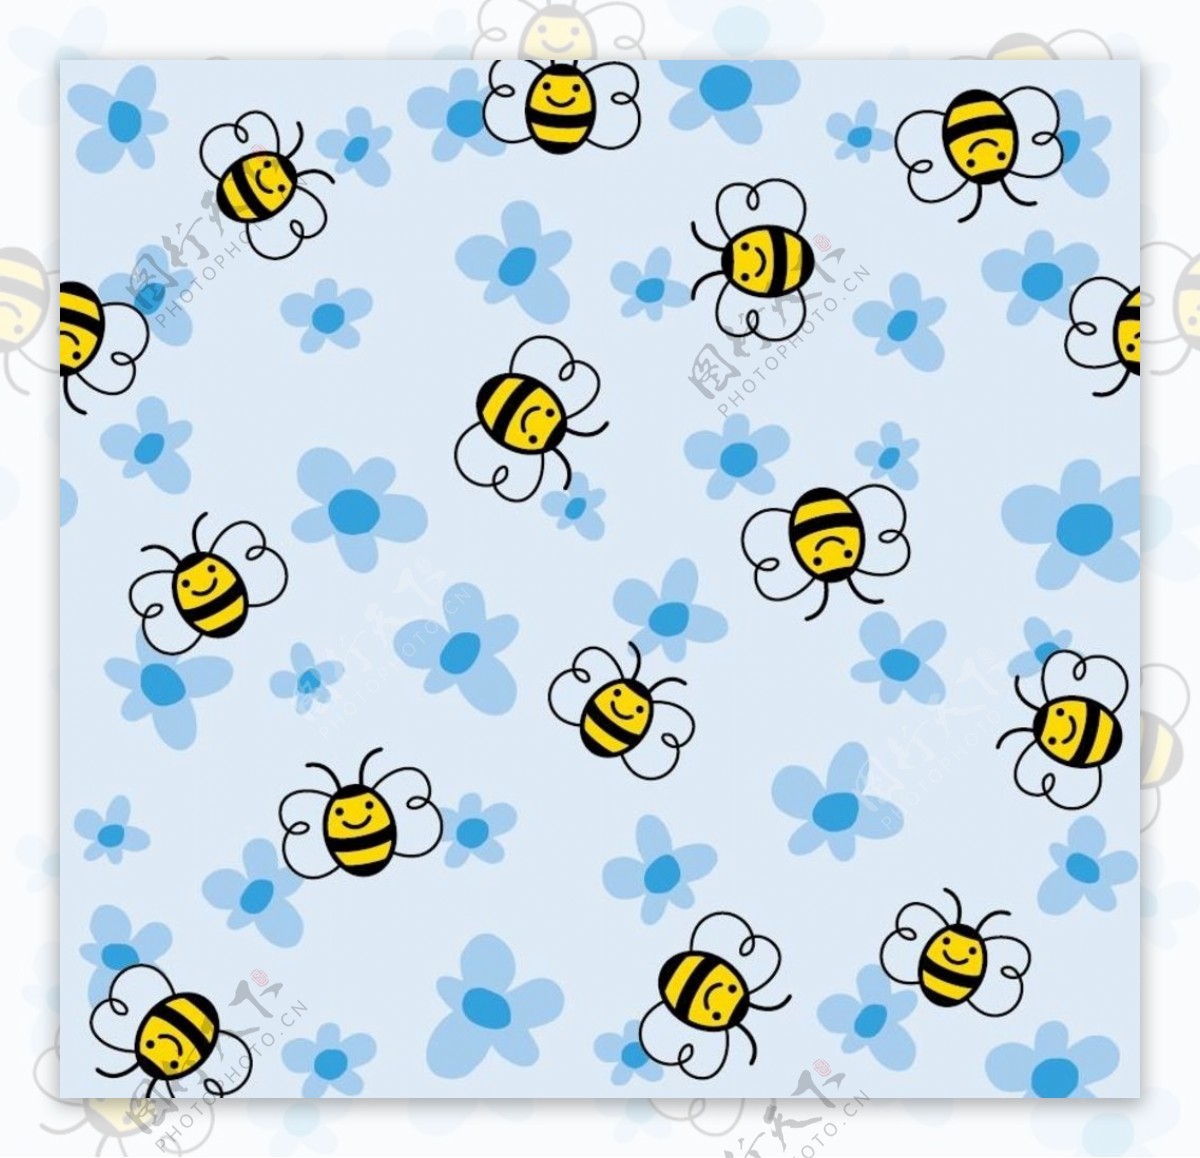 小蜜蜂背景图